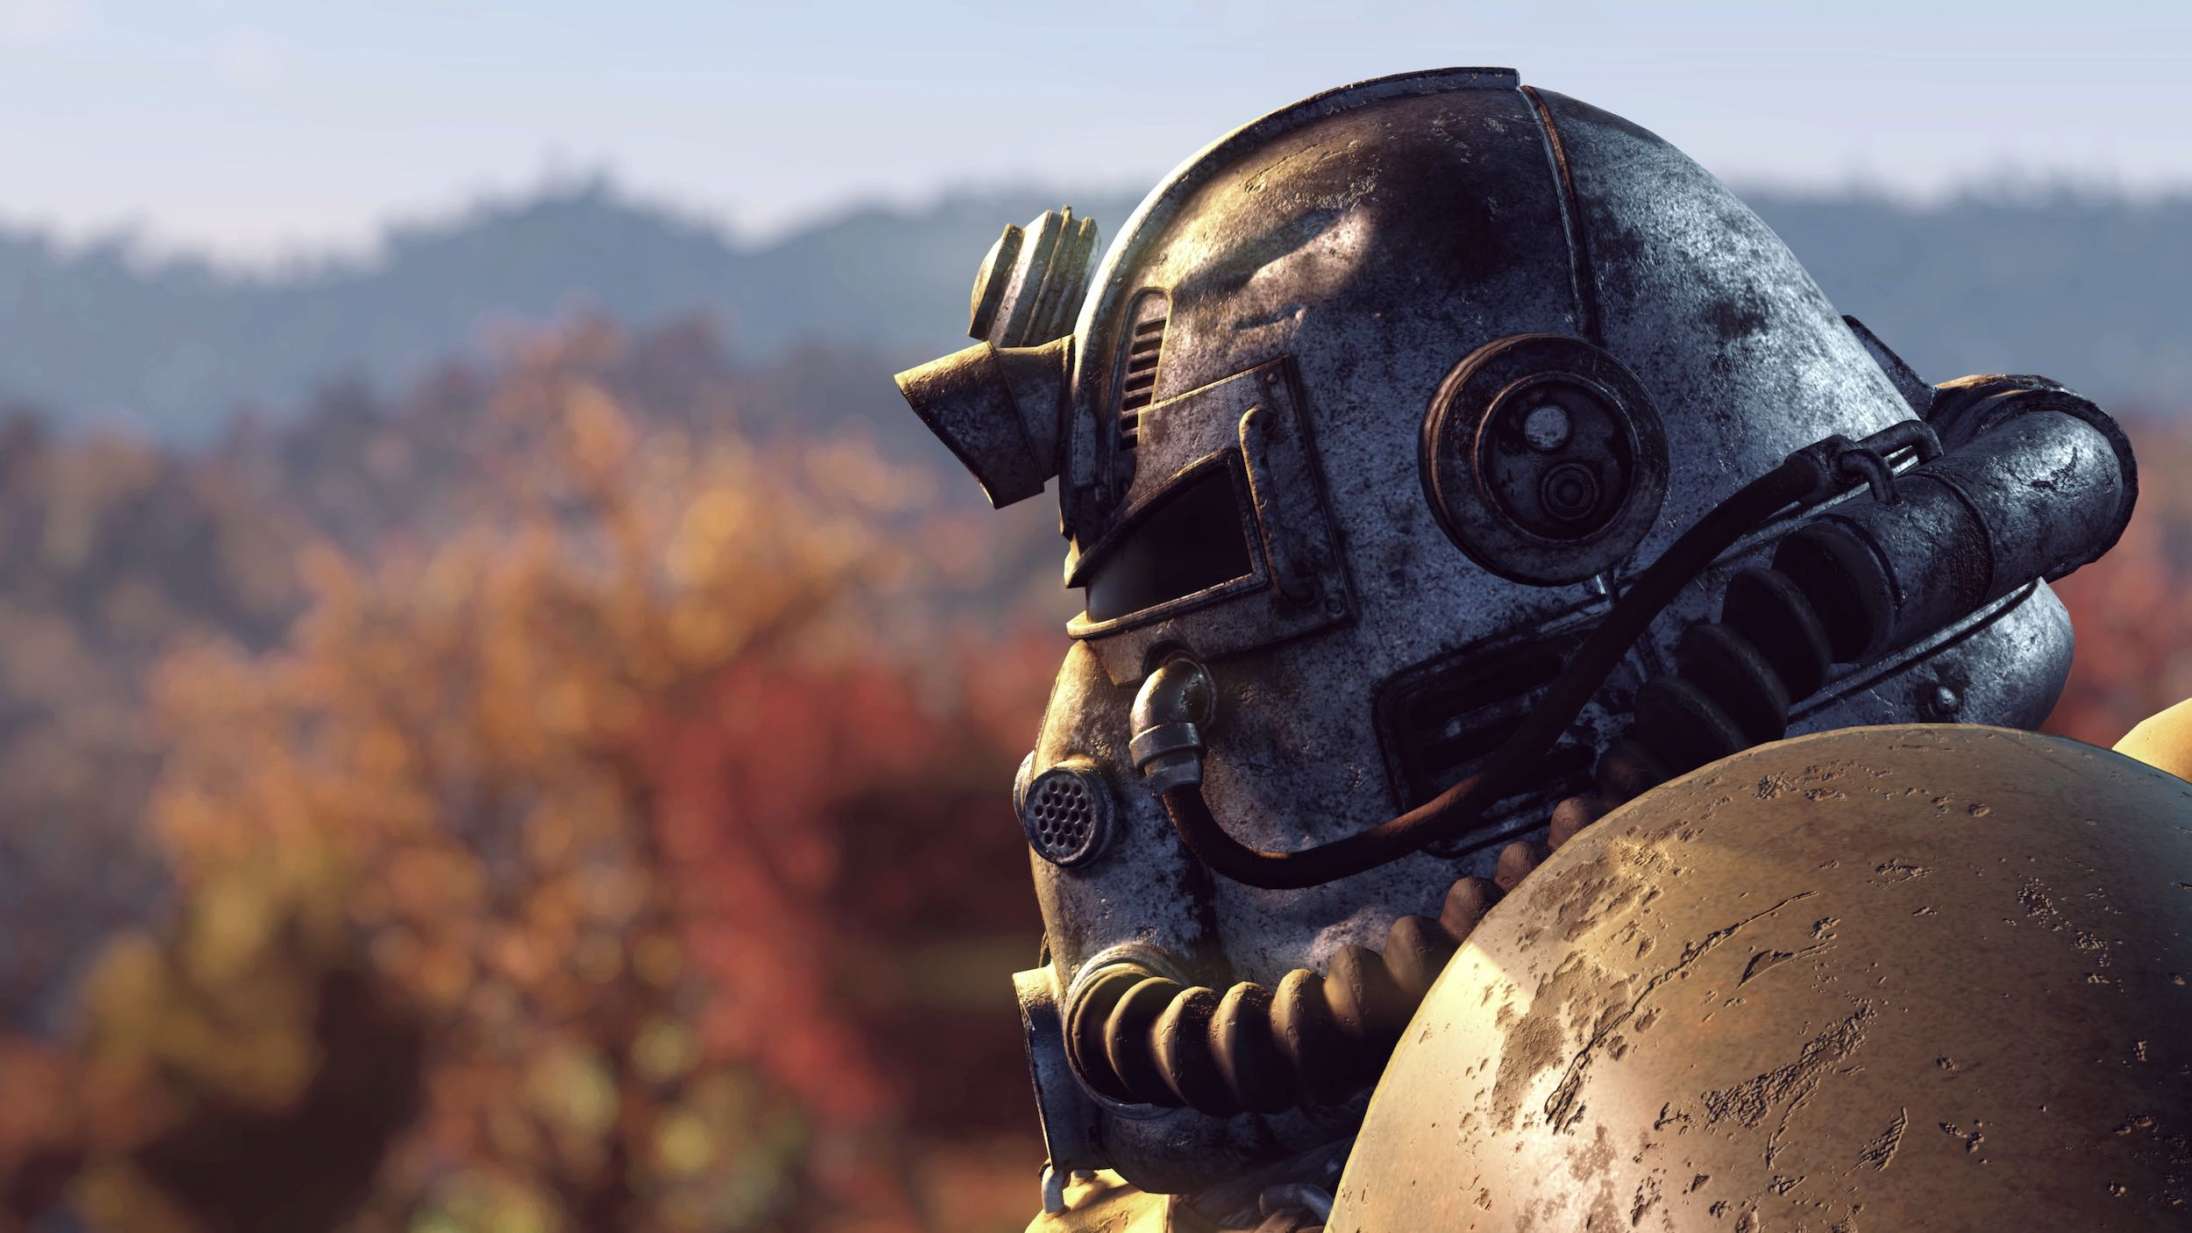 Facebook bandlyser gaming-gruppe: ‘Fallout’-rollespil forveksles med milits